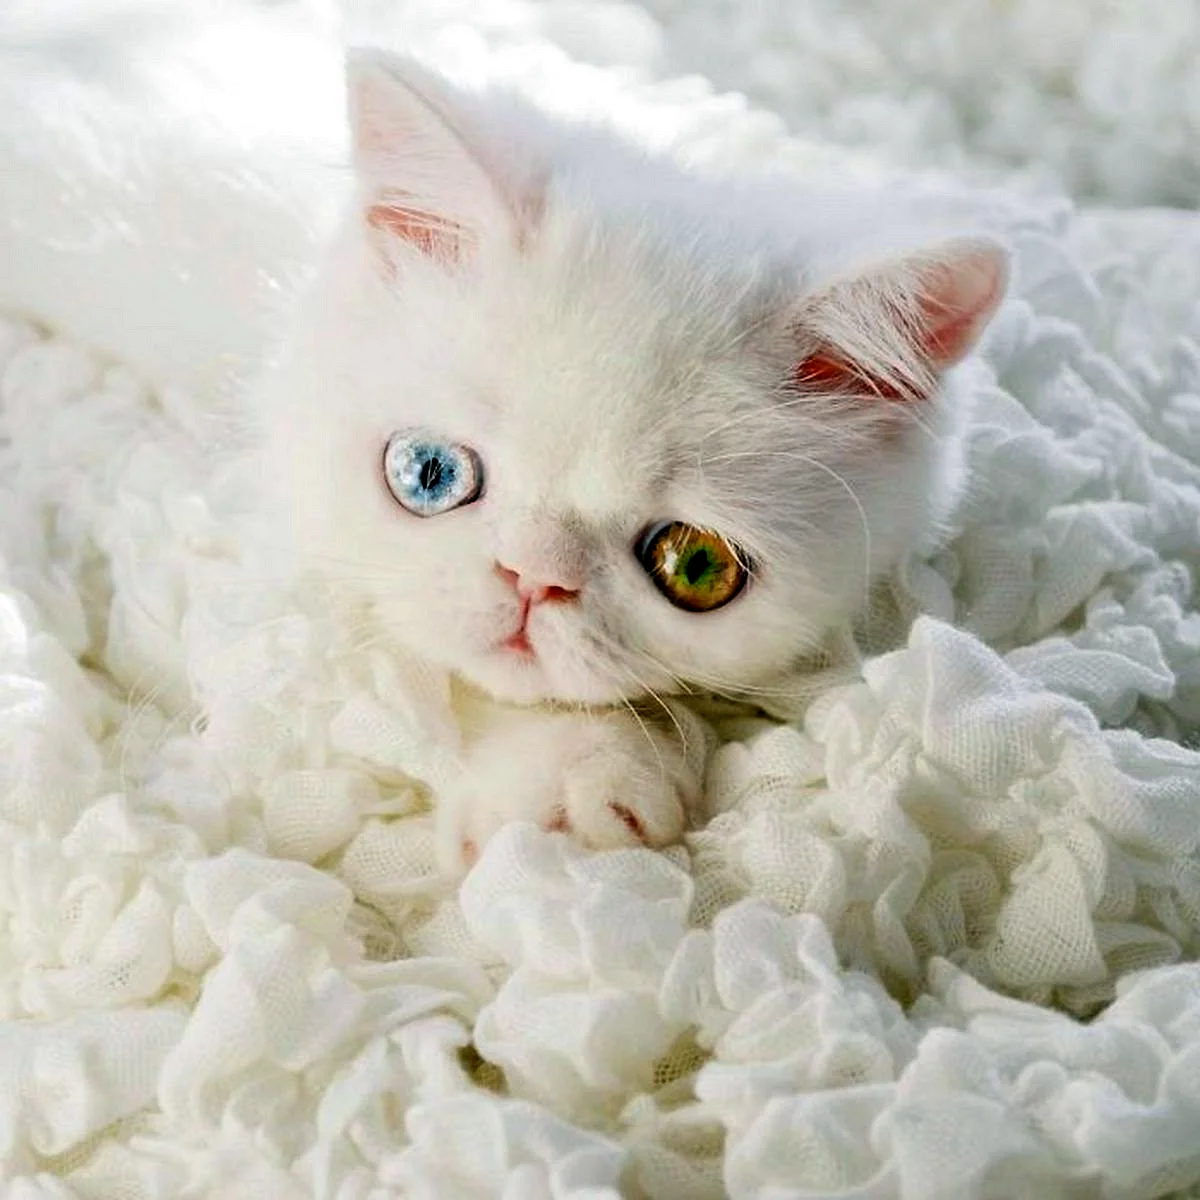 Красивая белая кошка